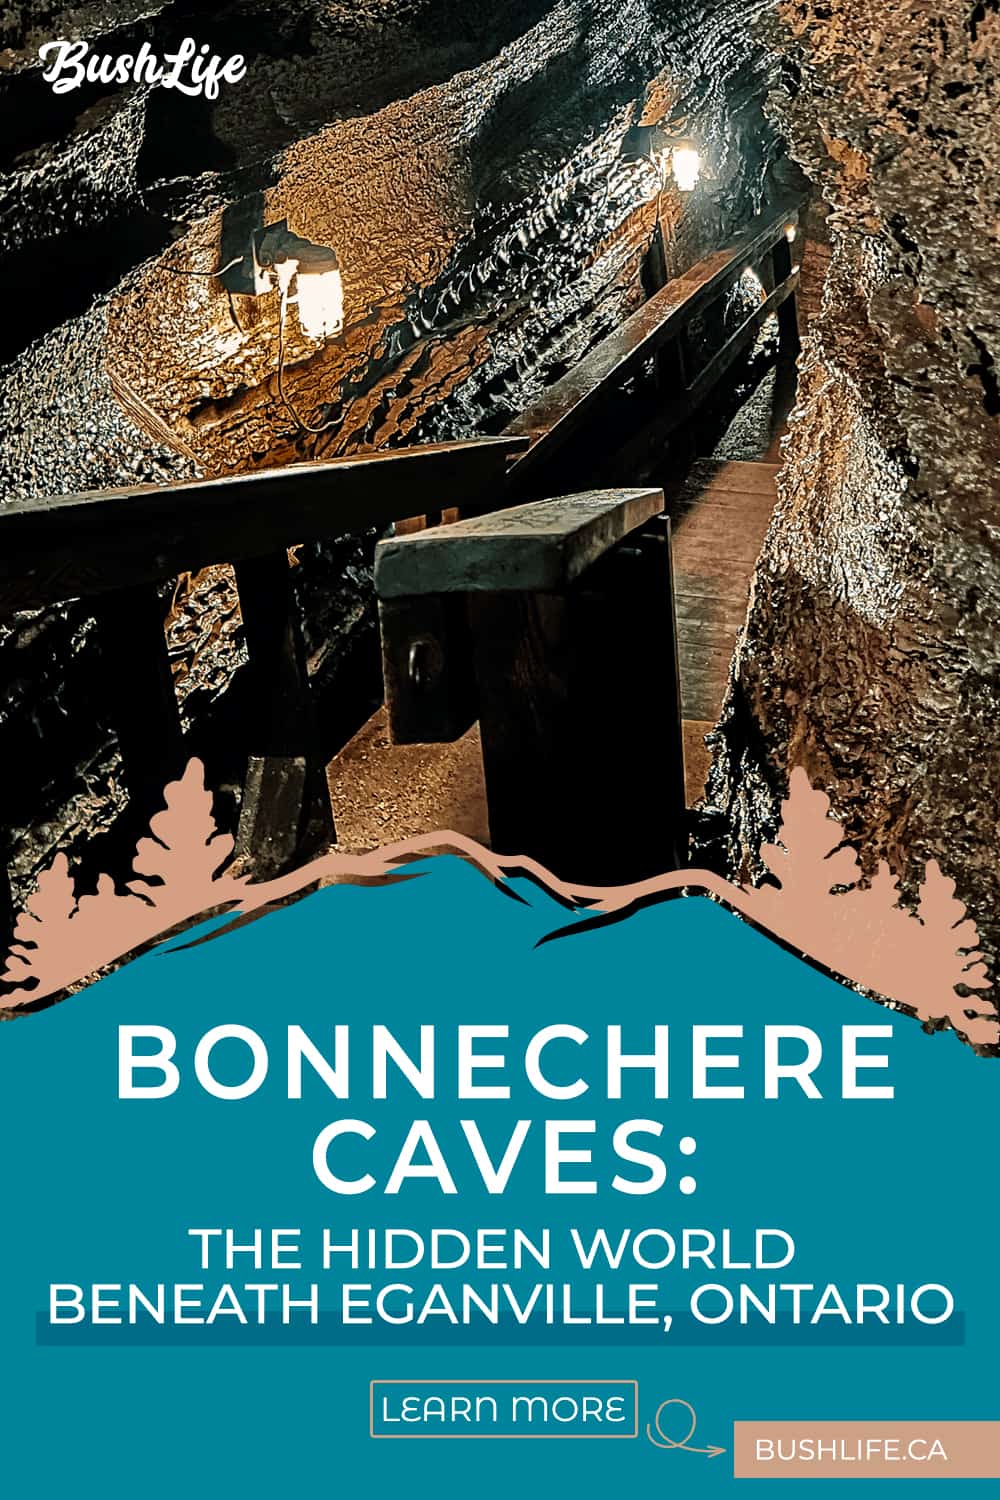 BushLife - Bonnchere Caves PINTEREST